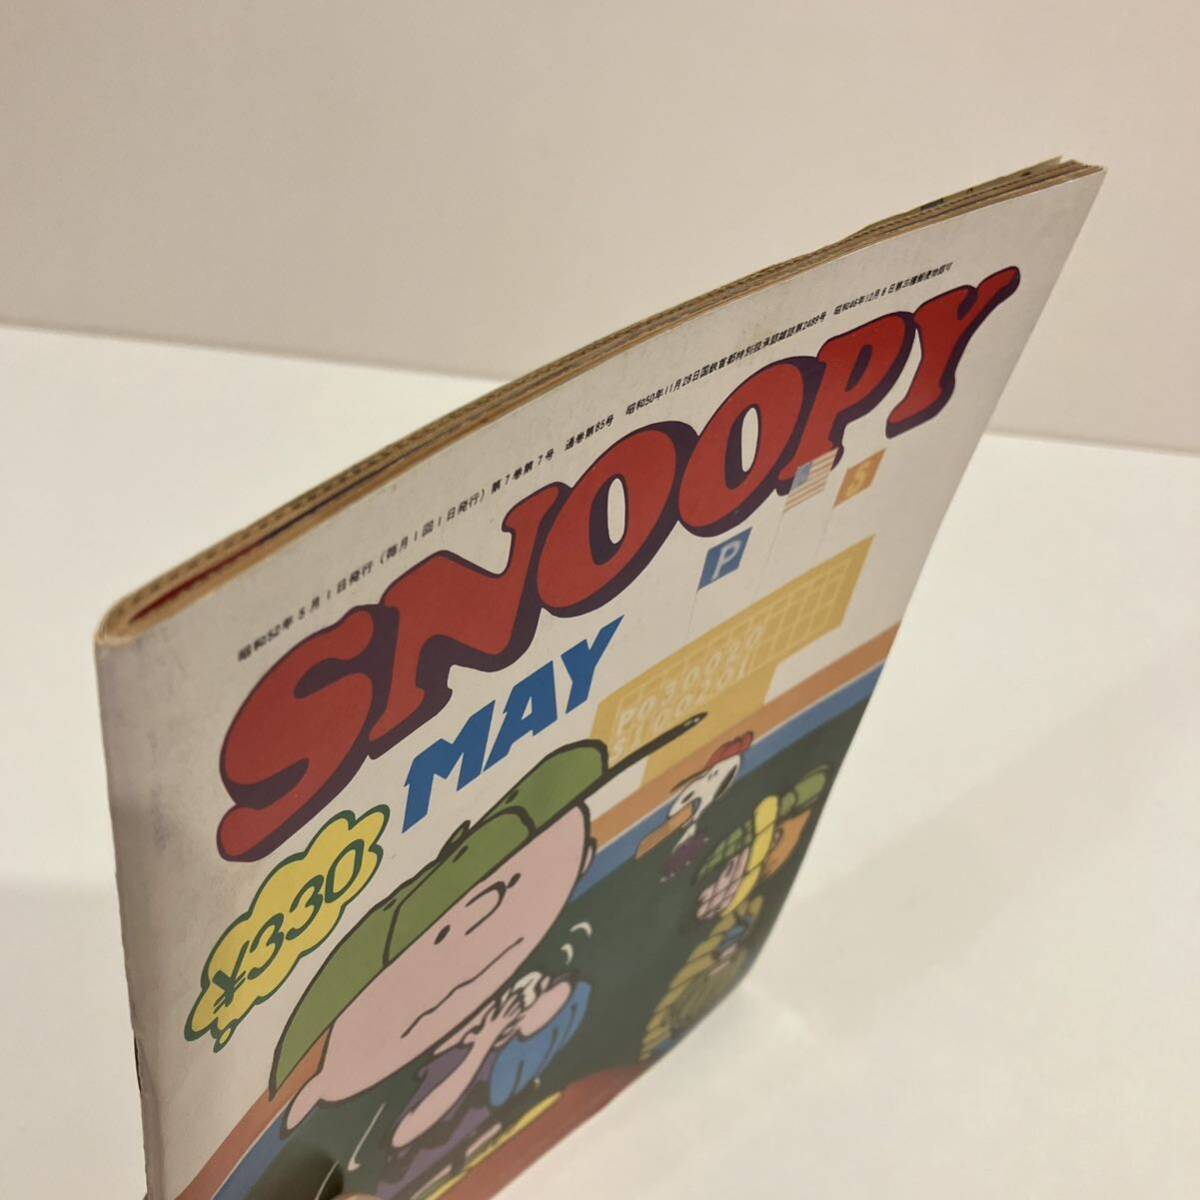 240502[ ежемесячный Snoopy ] Showa 52 год 5 месяц номер *... книжный магазин *SNOOPY PEANUTS COMICS* Showa Retro подлинная вещь прекрасный товар редкий старинная книга 